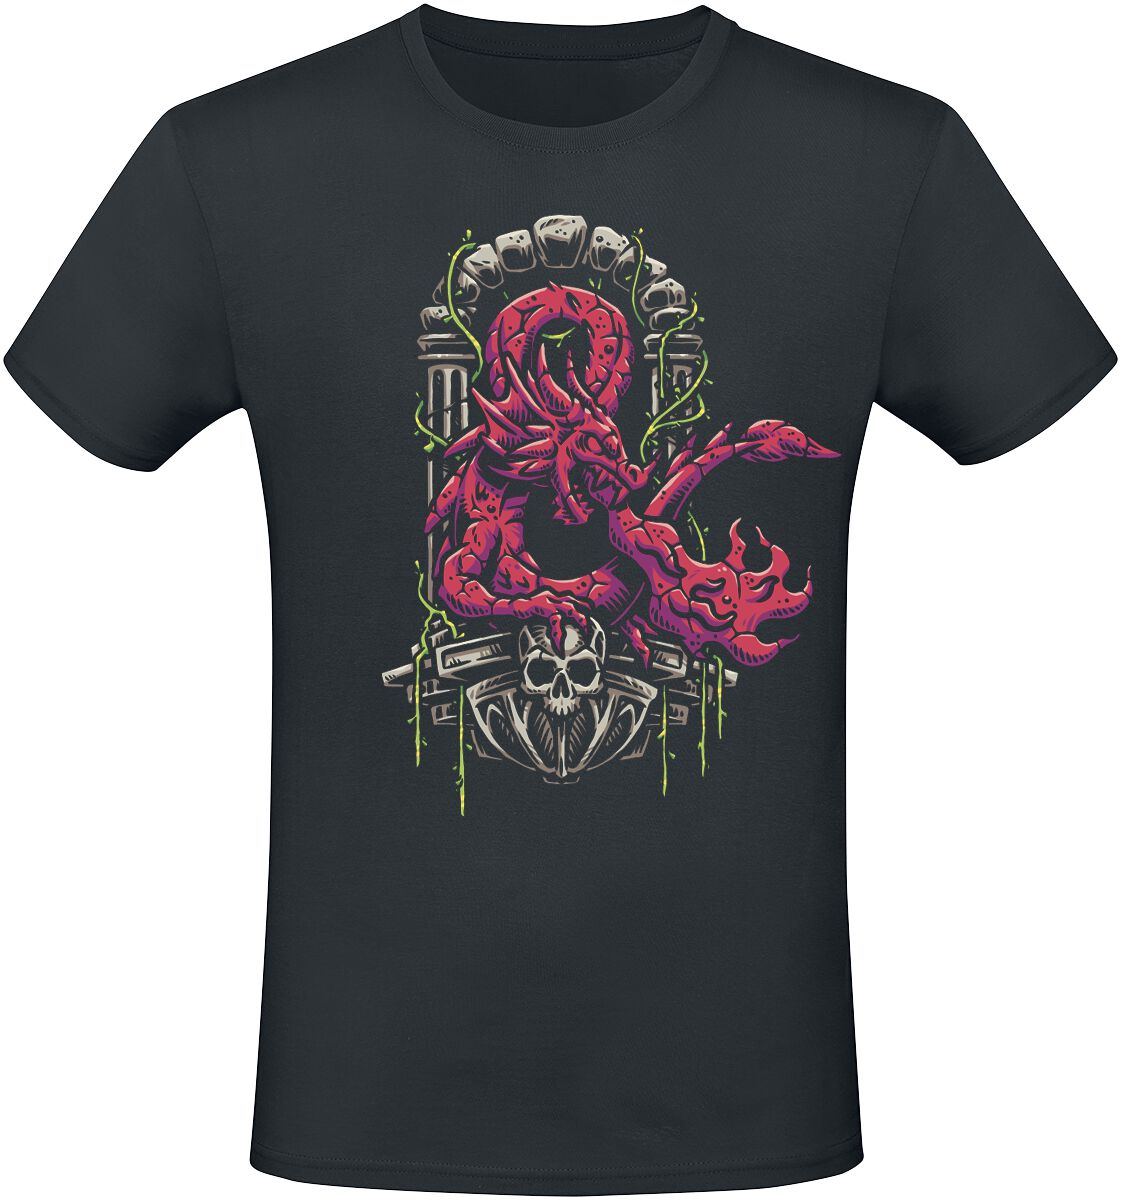 Dungeons and Dragons - Gaming T-Shirt - Ampersand Dragon - S bis XXL - für Männer - Größe M - schwarz  - EMP exklusives Merchandise!